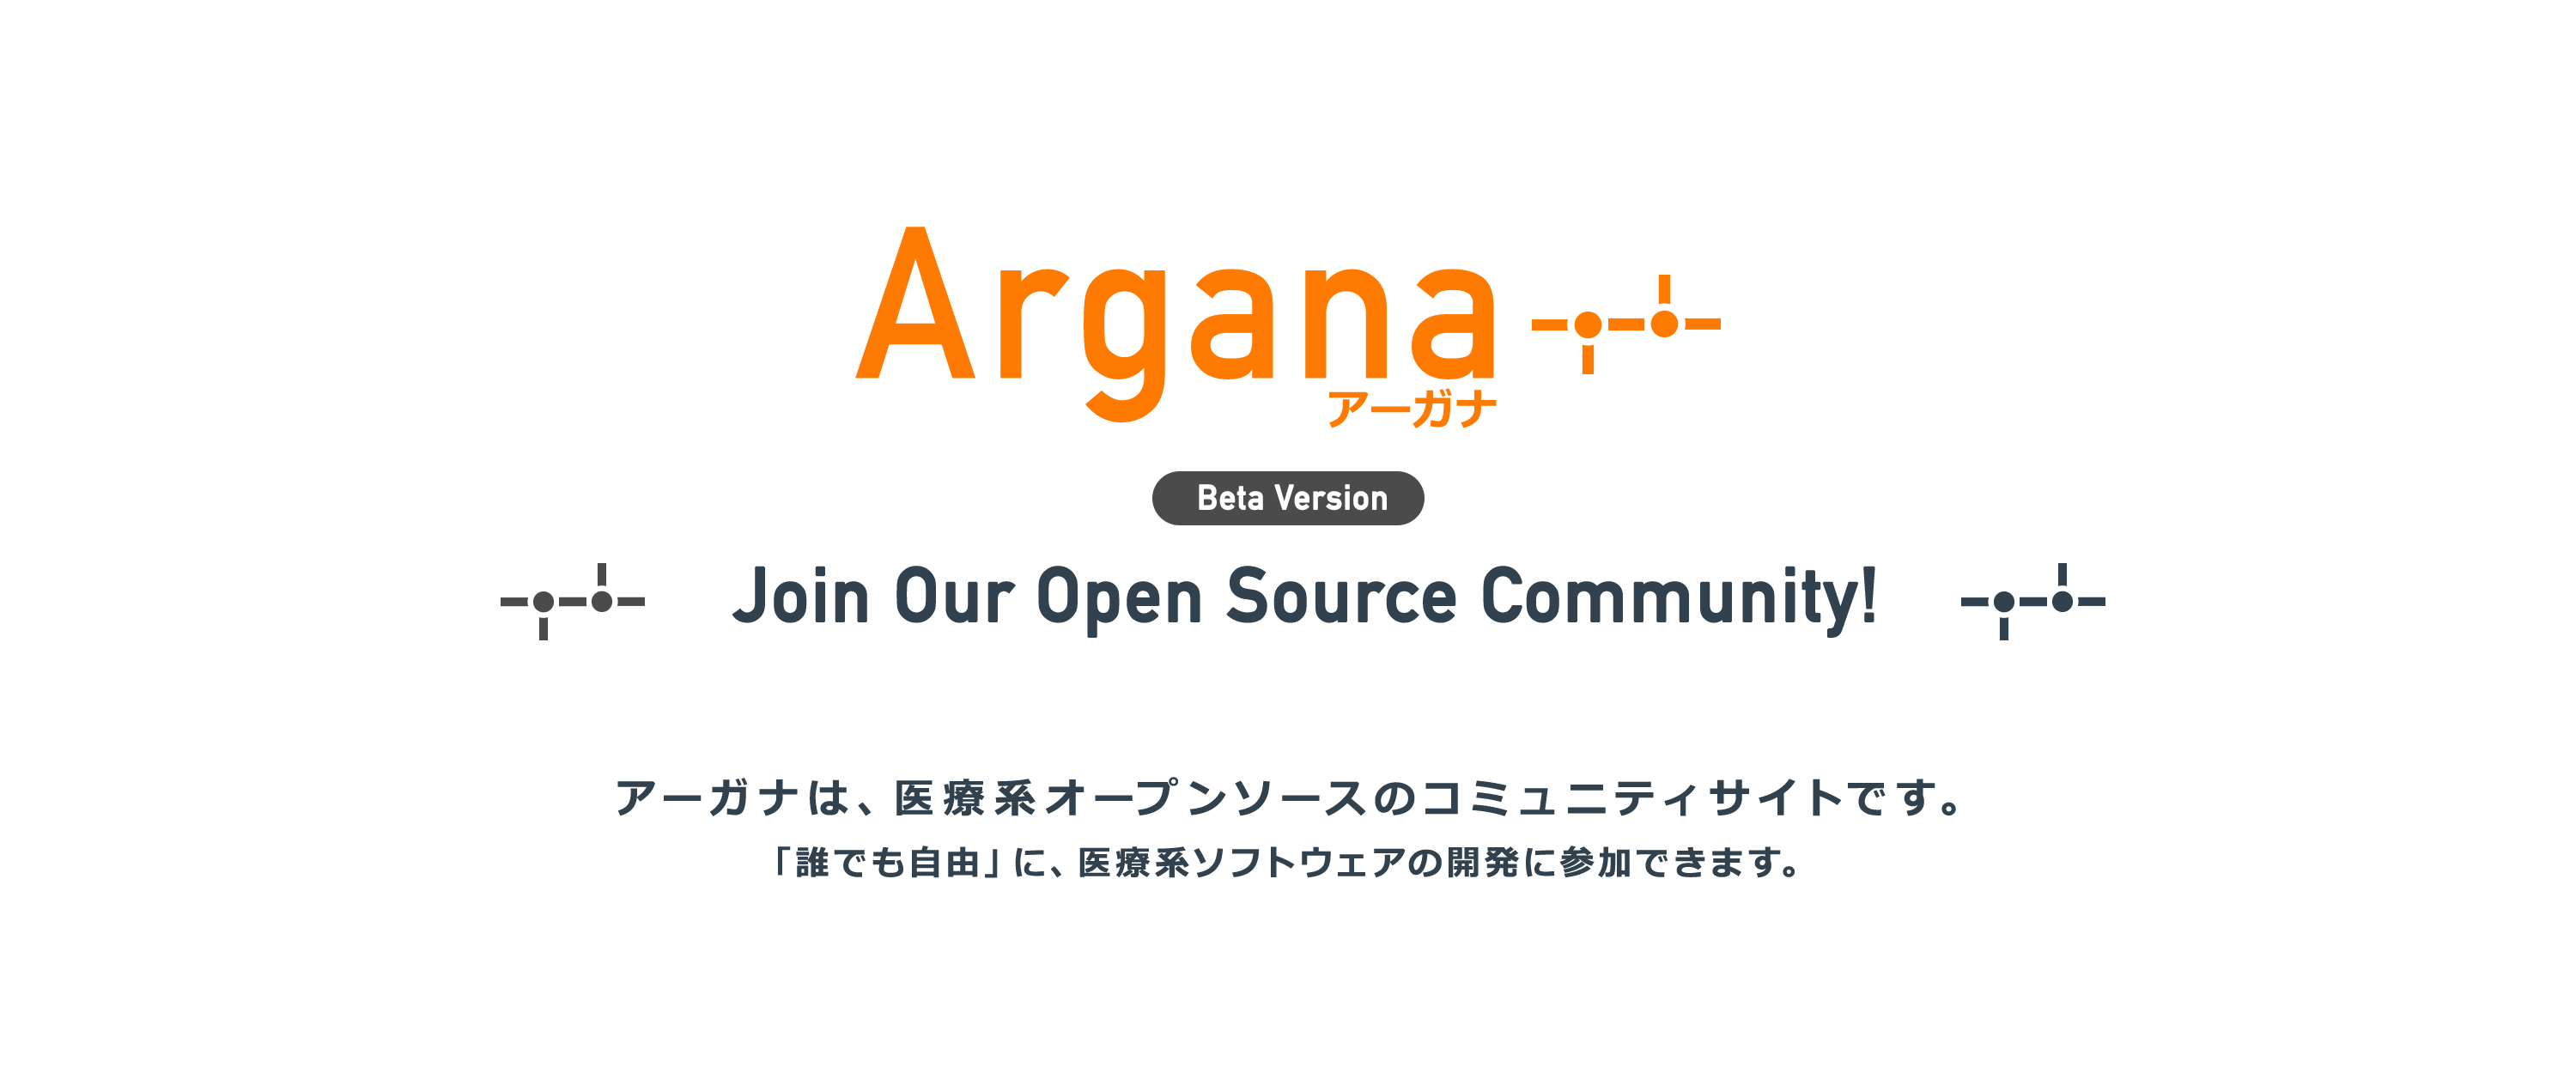 アーガナは、医療系のオープンソースのコミュニティサイトです。誰でも自由に、医療系ソフトウェアの開発に参加できます。